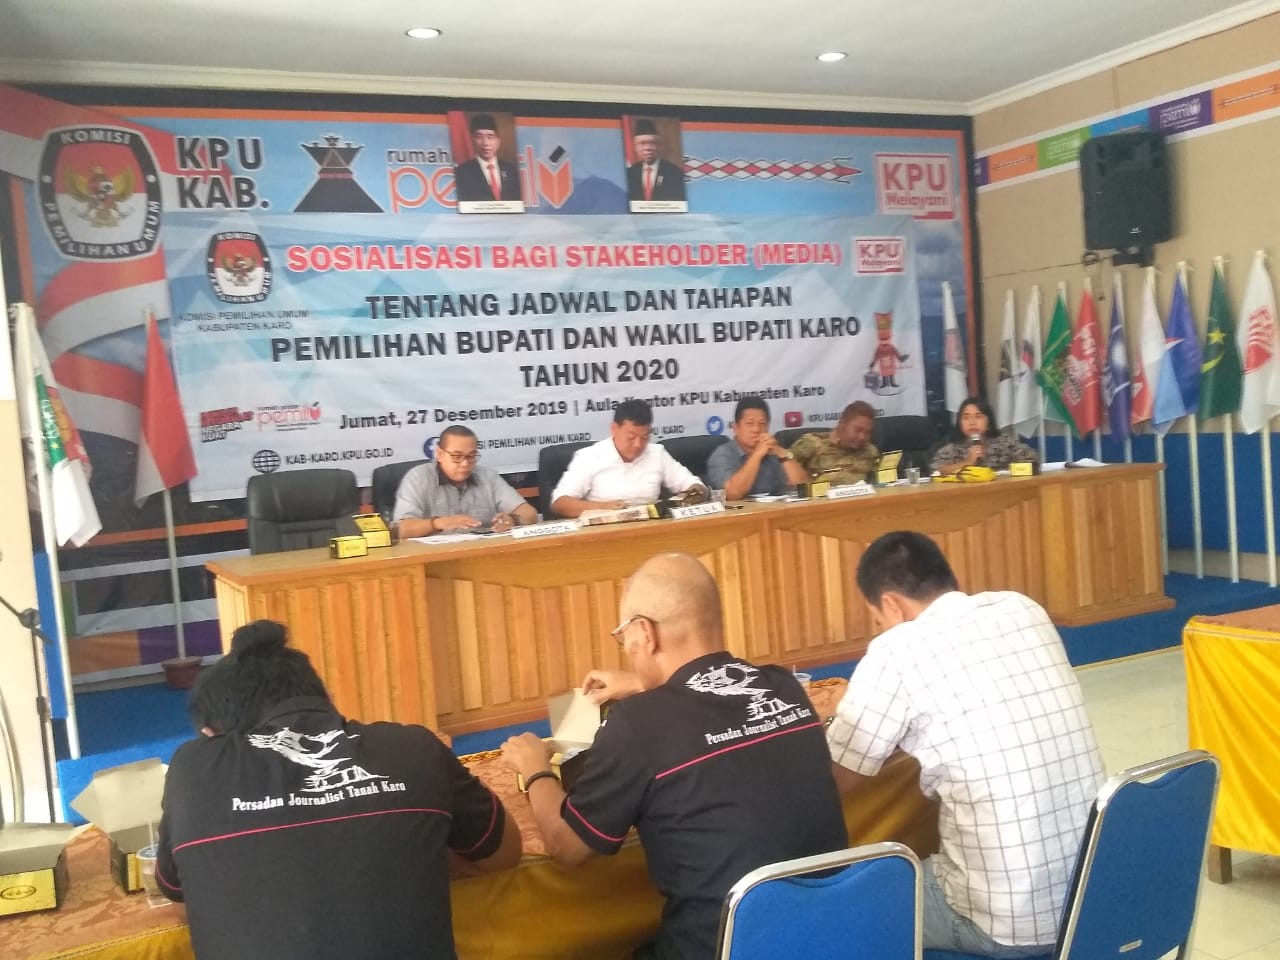 KPUD Sosialisasi Stakeholder Media Terkait Jadwal Dan Tahapan Pilkada Karo